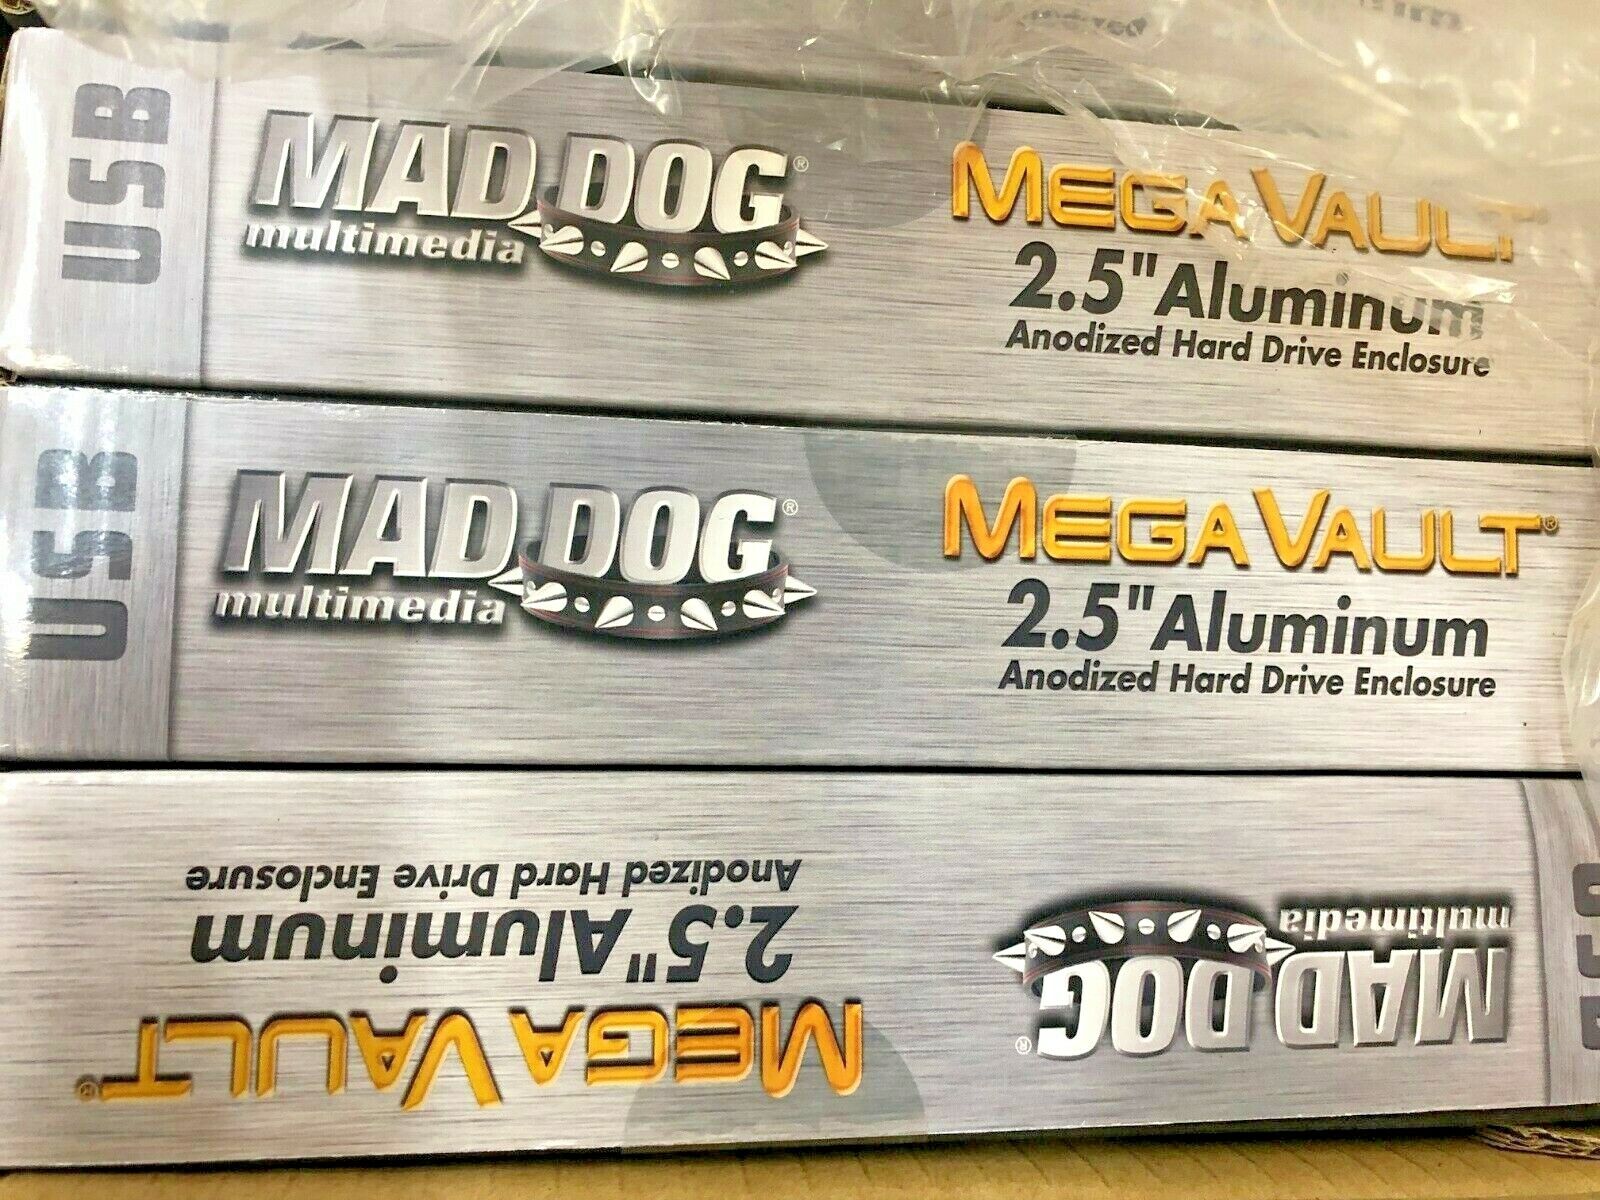 Lot of 10 Mad Dog MD-AEN250USB2 Mega Vault 2.5” Aluminum HD Enclosures